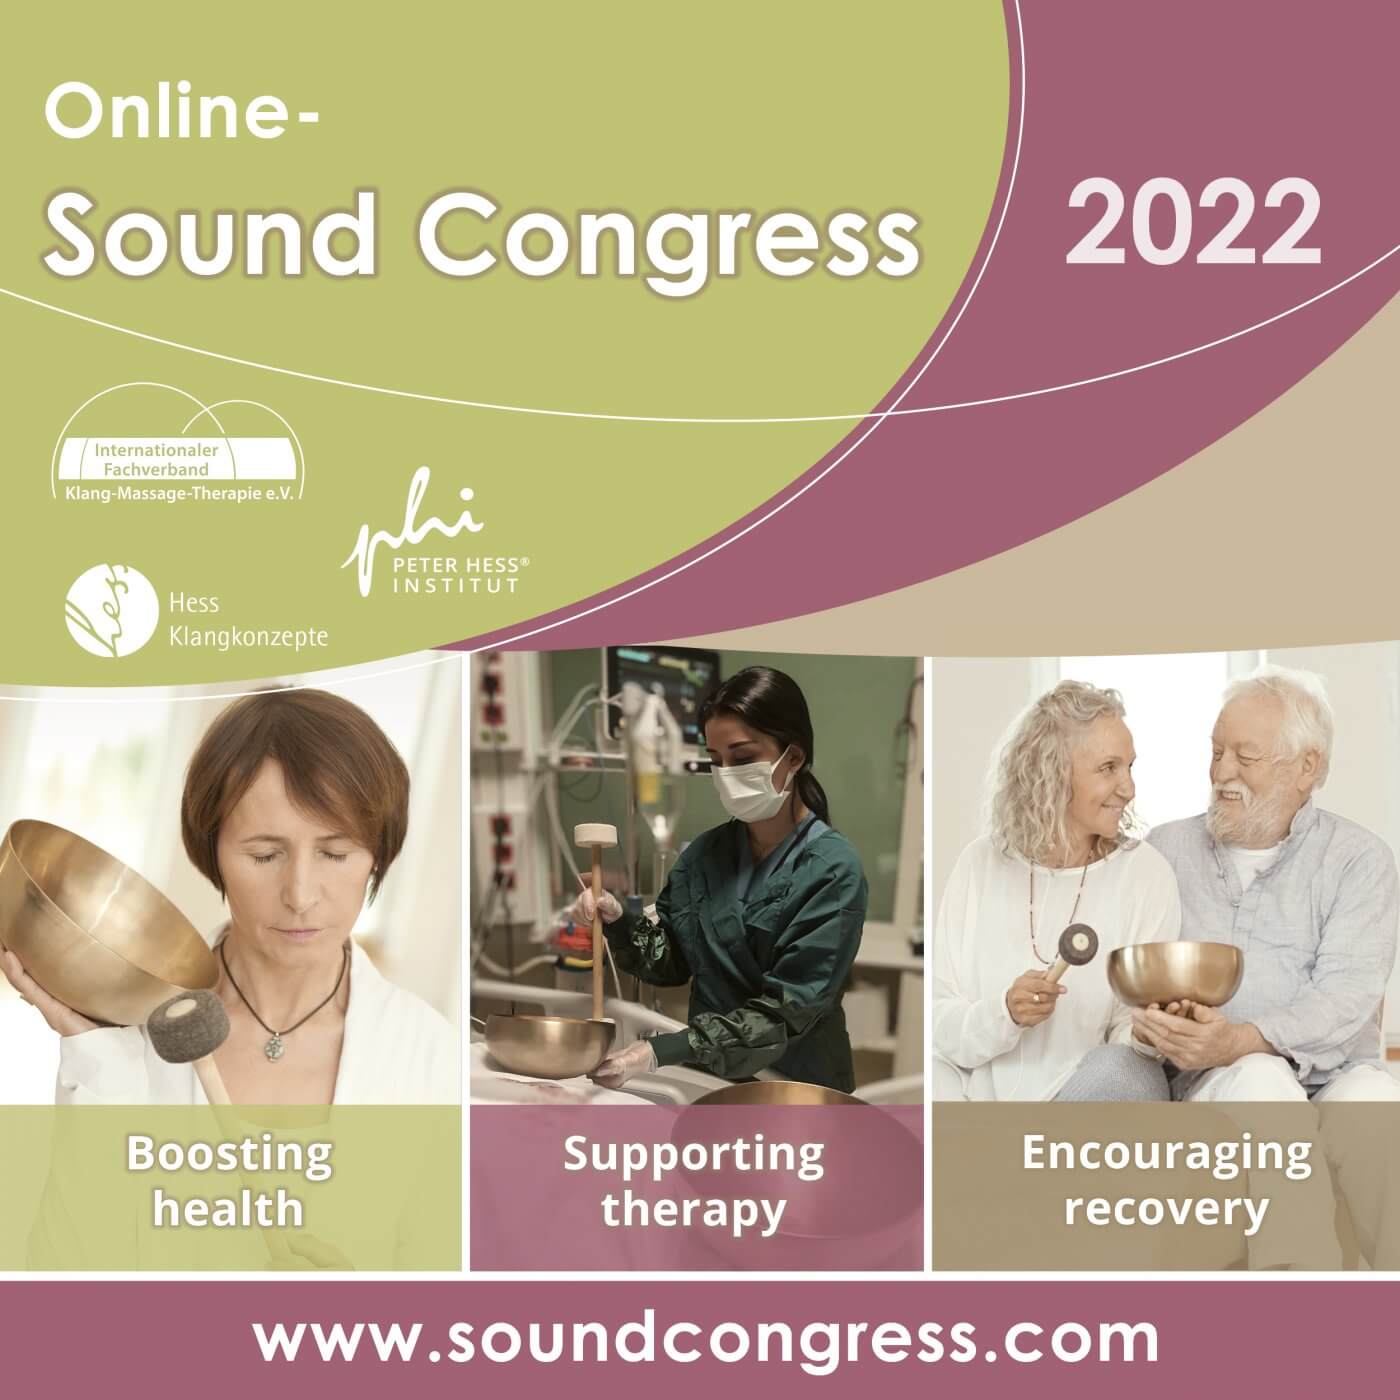 Online - Sound Congress 2022